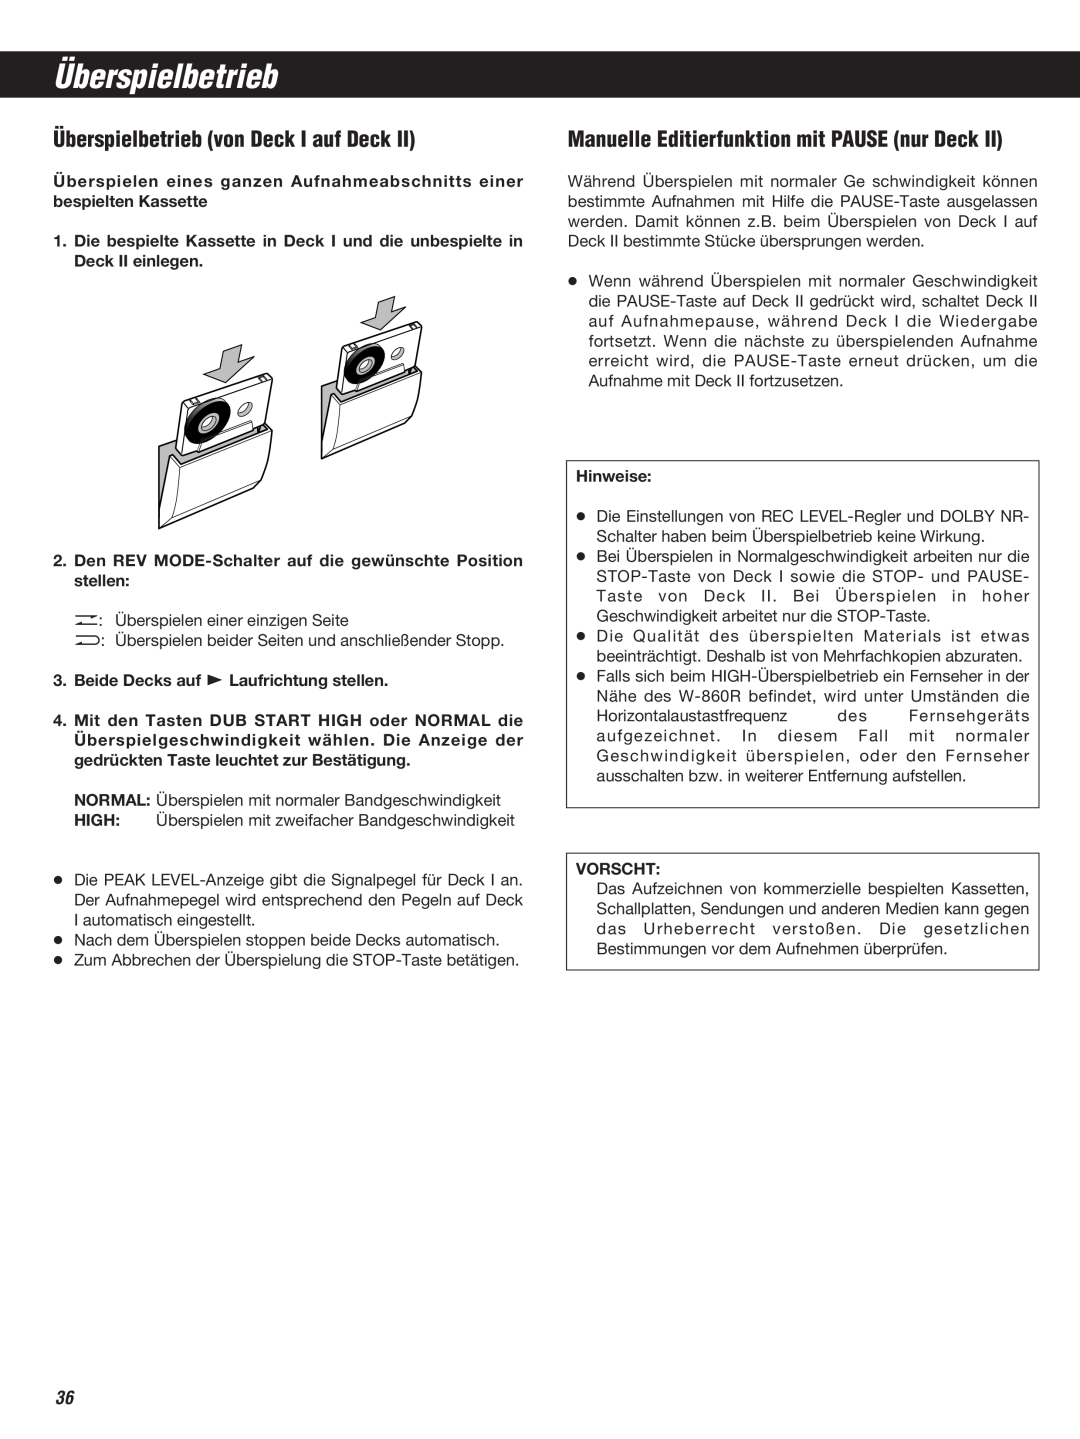 Teac W-860R owner manual Überspielbetrieb von Deck I auf Deck, Manuelle Editierfunktion mit PAUSE nur Deck 